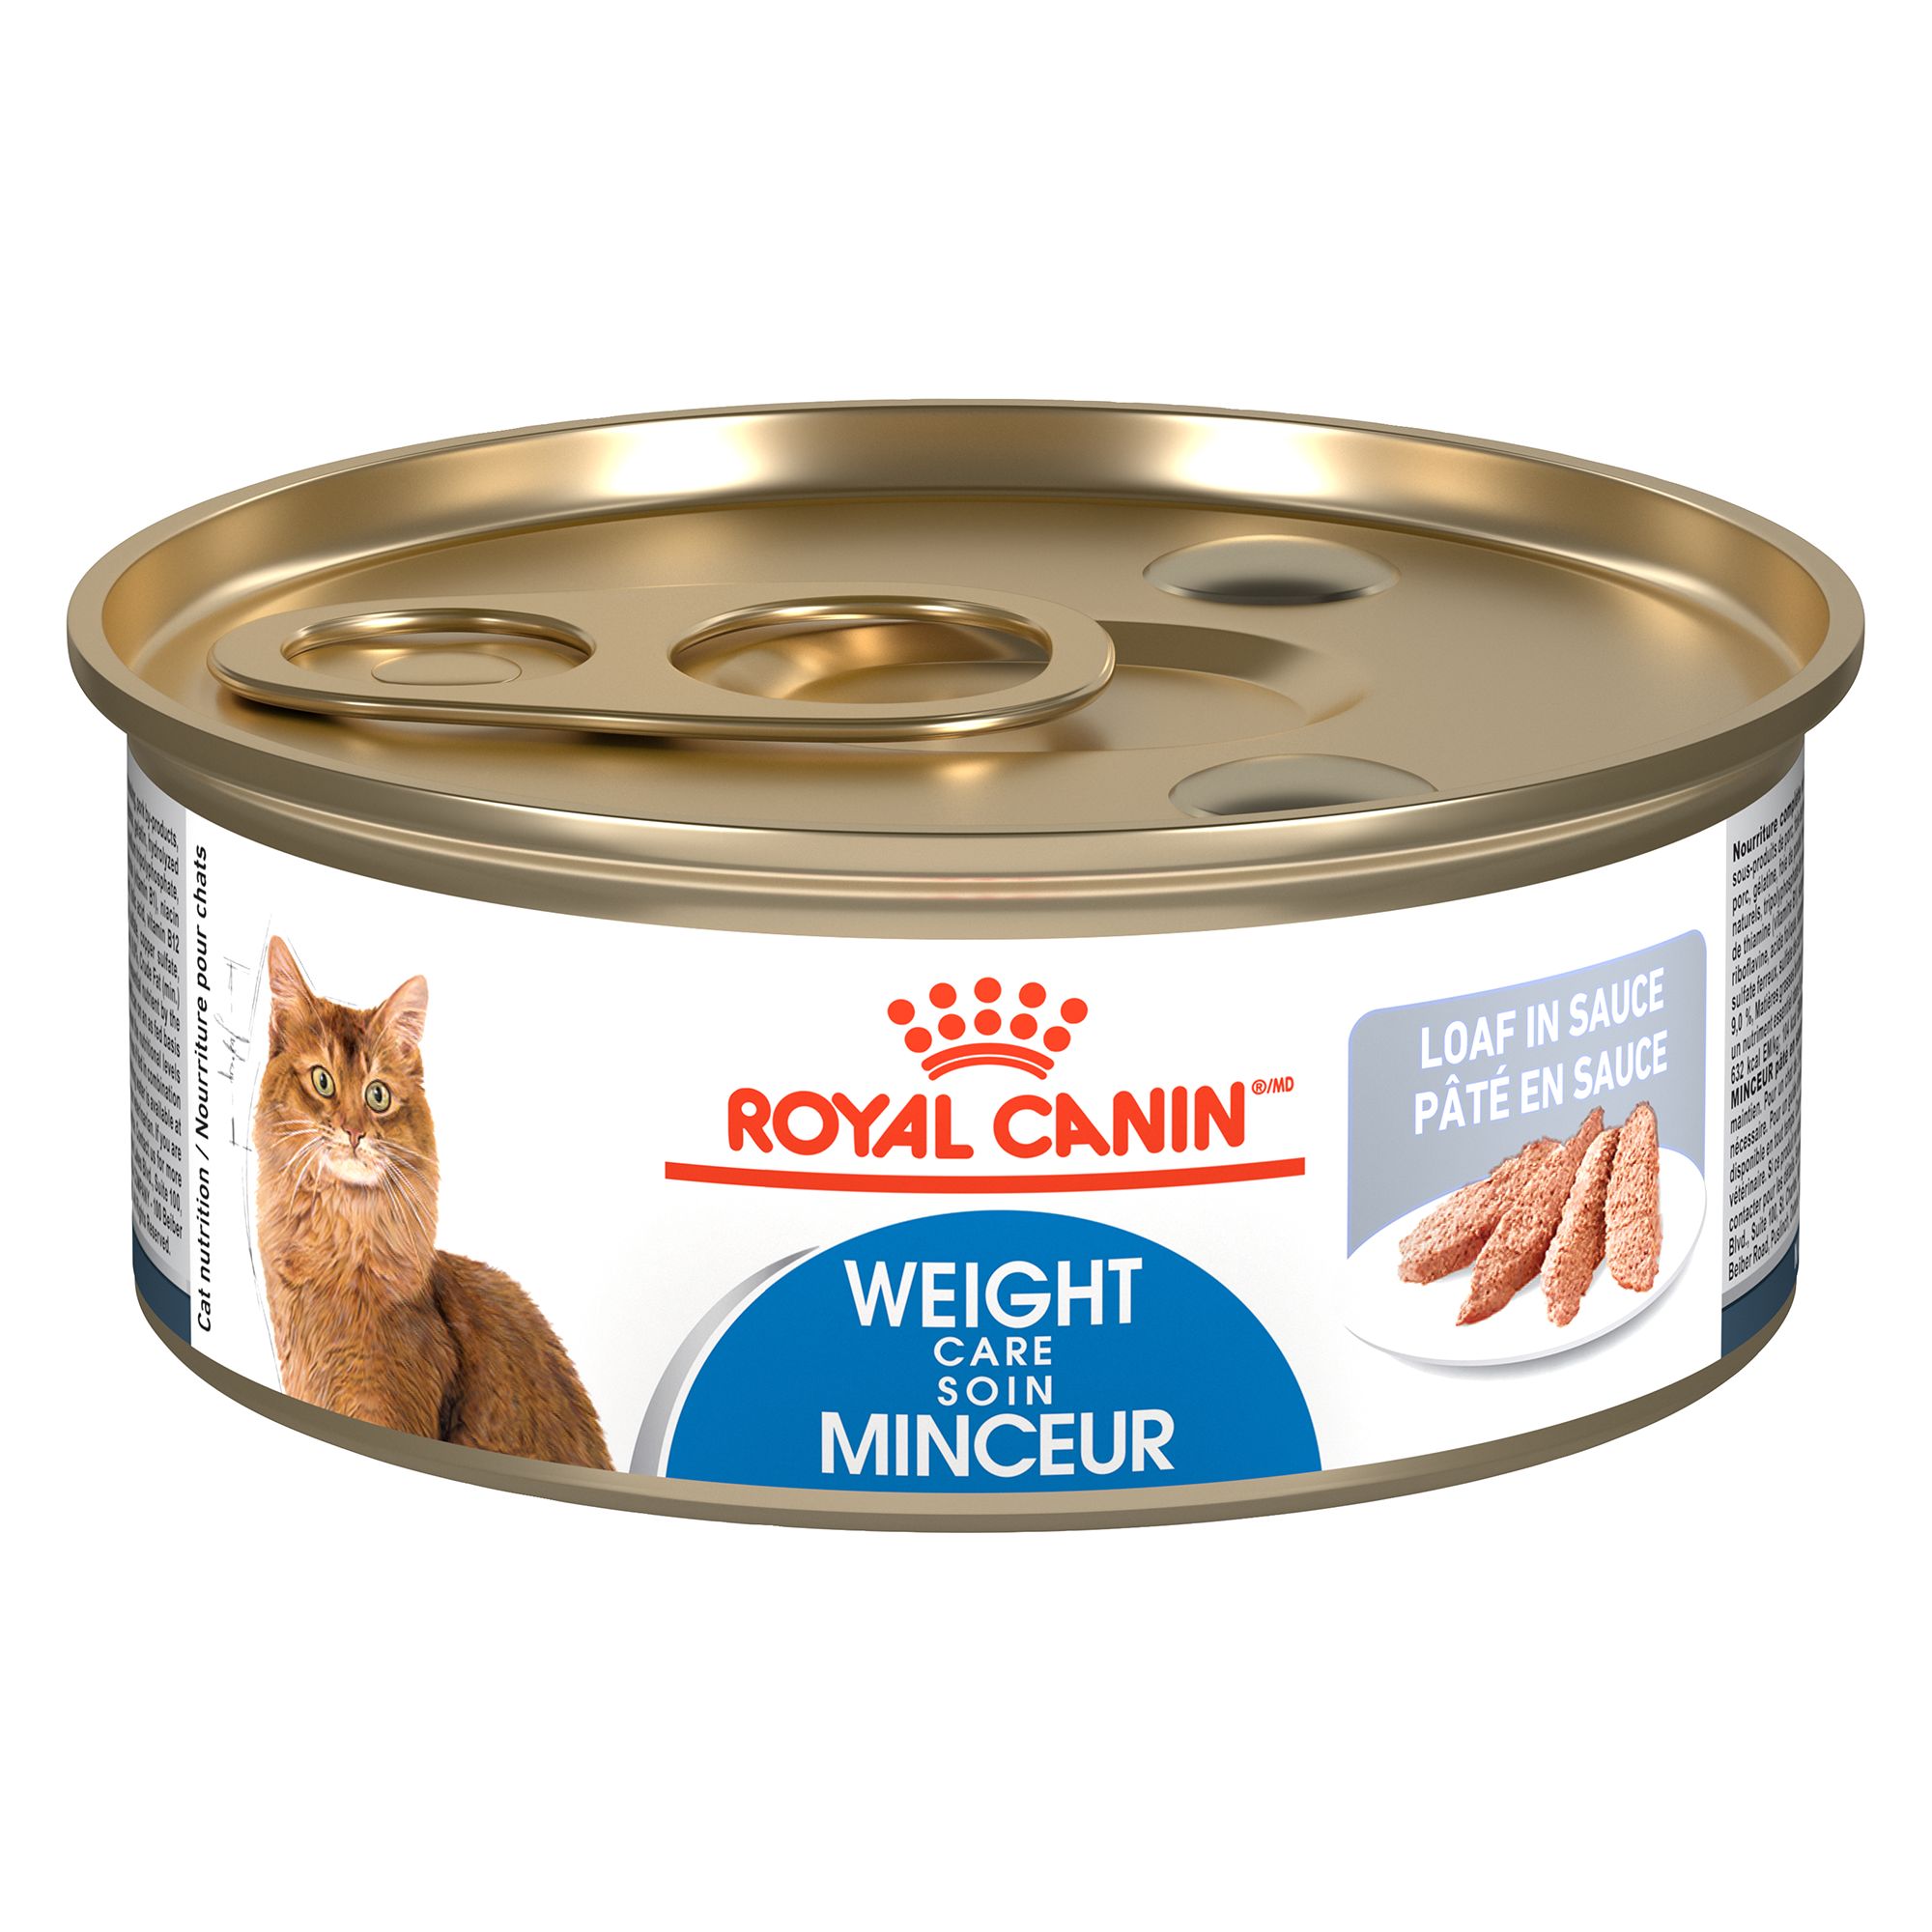 Royal Canin® Cat Food & Kitten Food | PetSmart